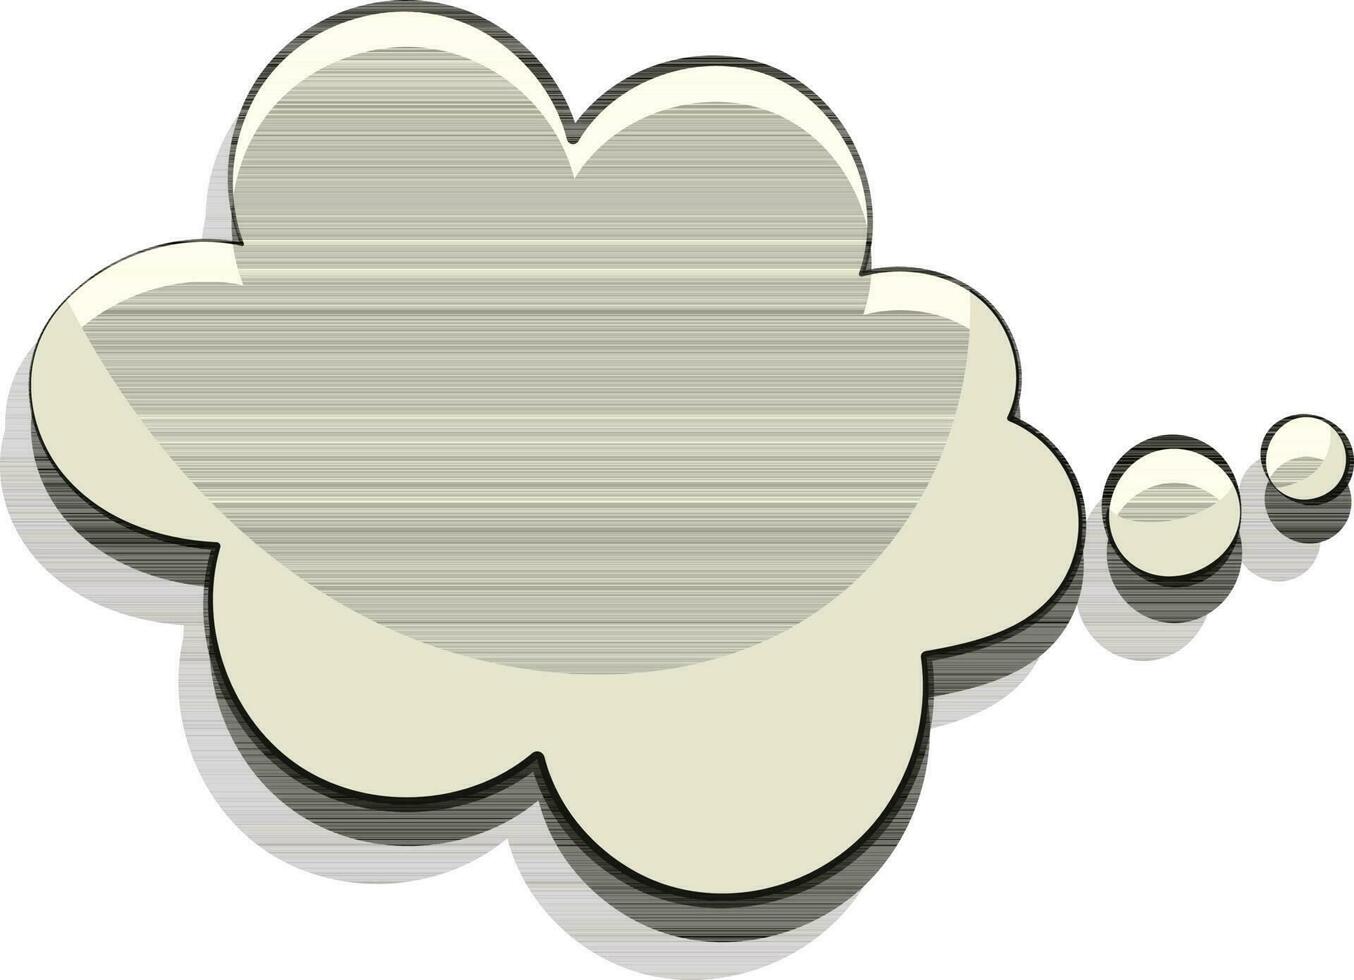 grappig toespraak bubbel in wolk vorm geven aan. vector